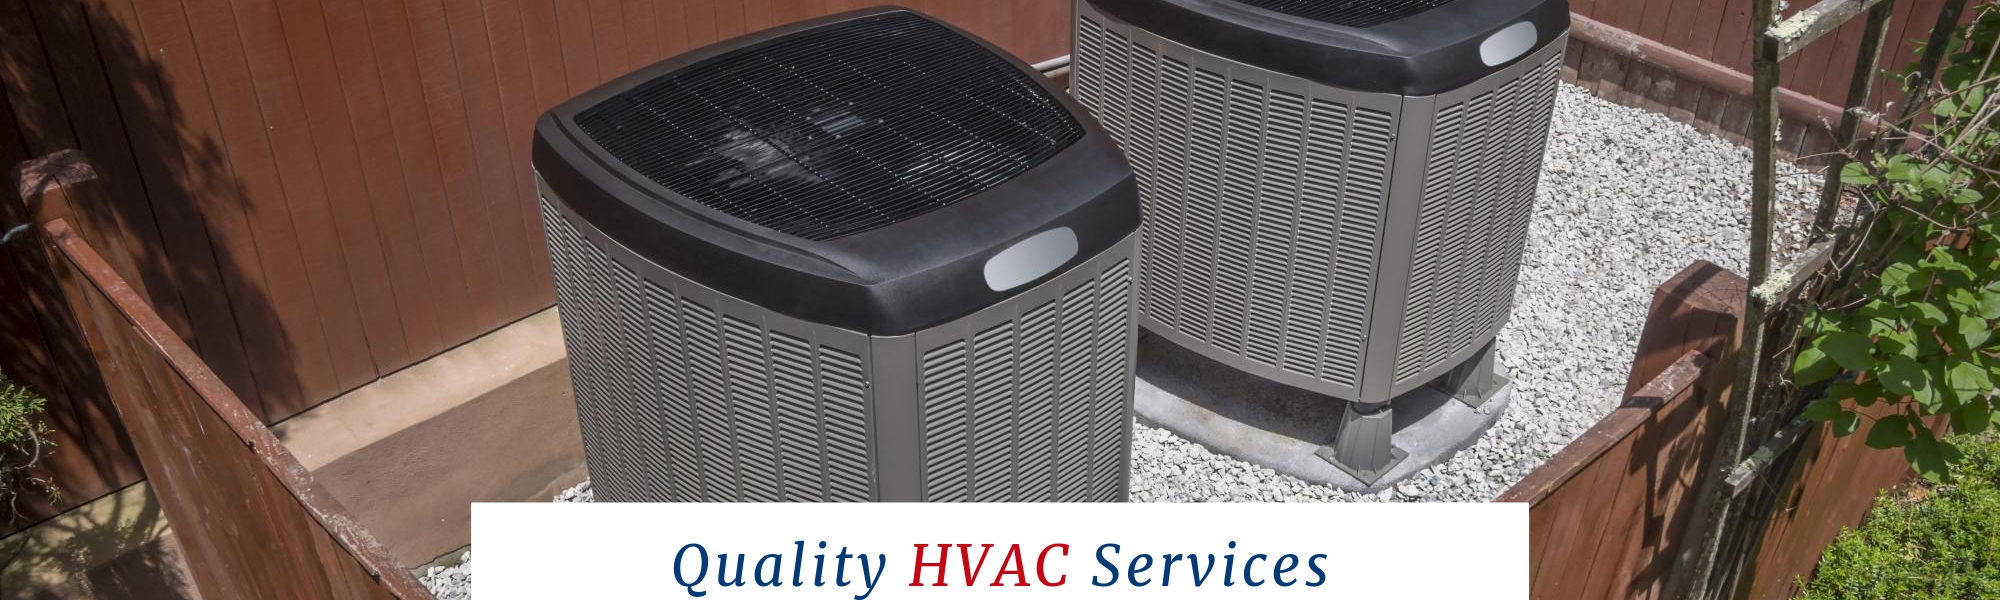 Quality HVAC Services